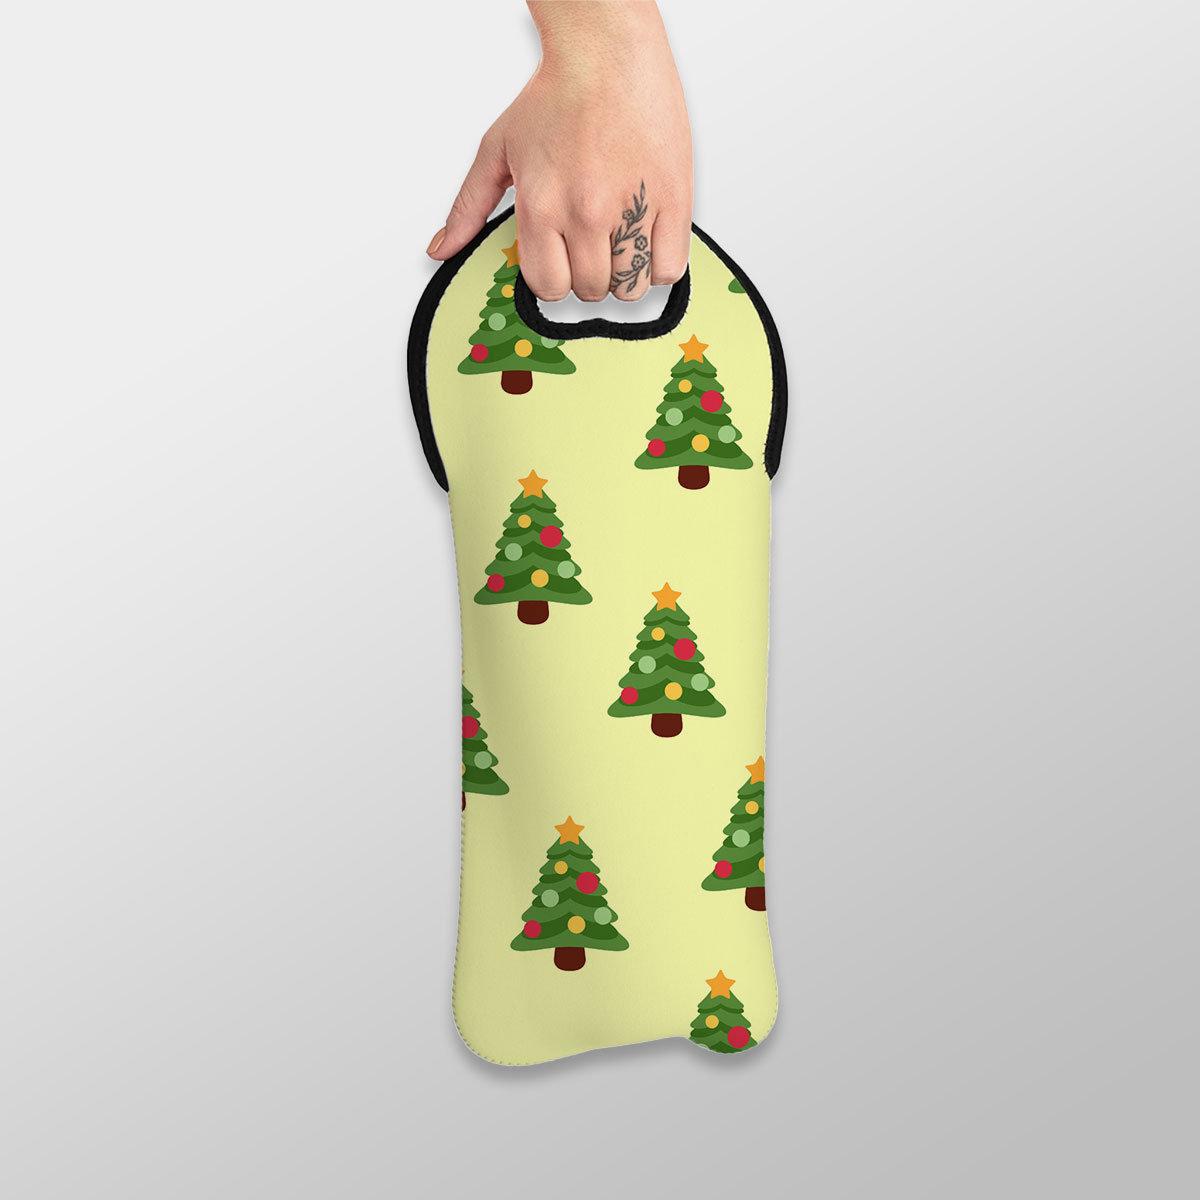 Christmas Tree, Pine Tree, Christmas Balls Wine Tote Bag